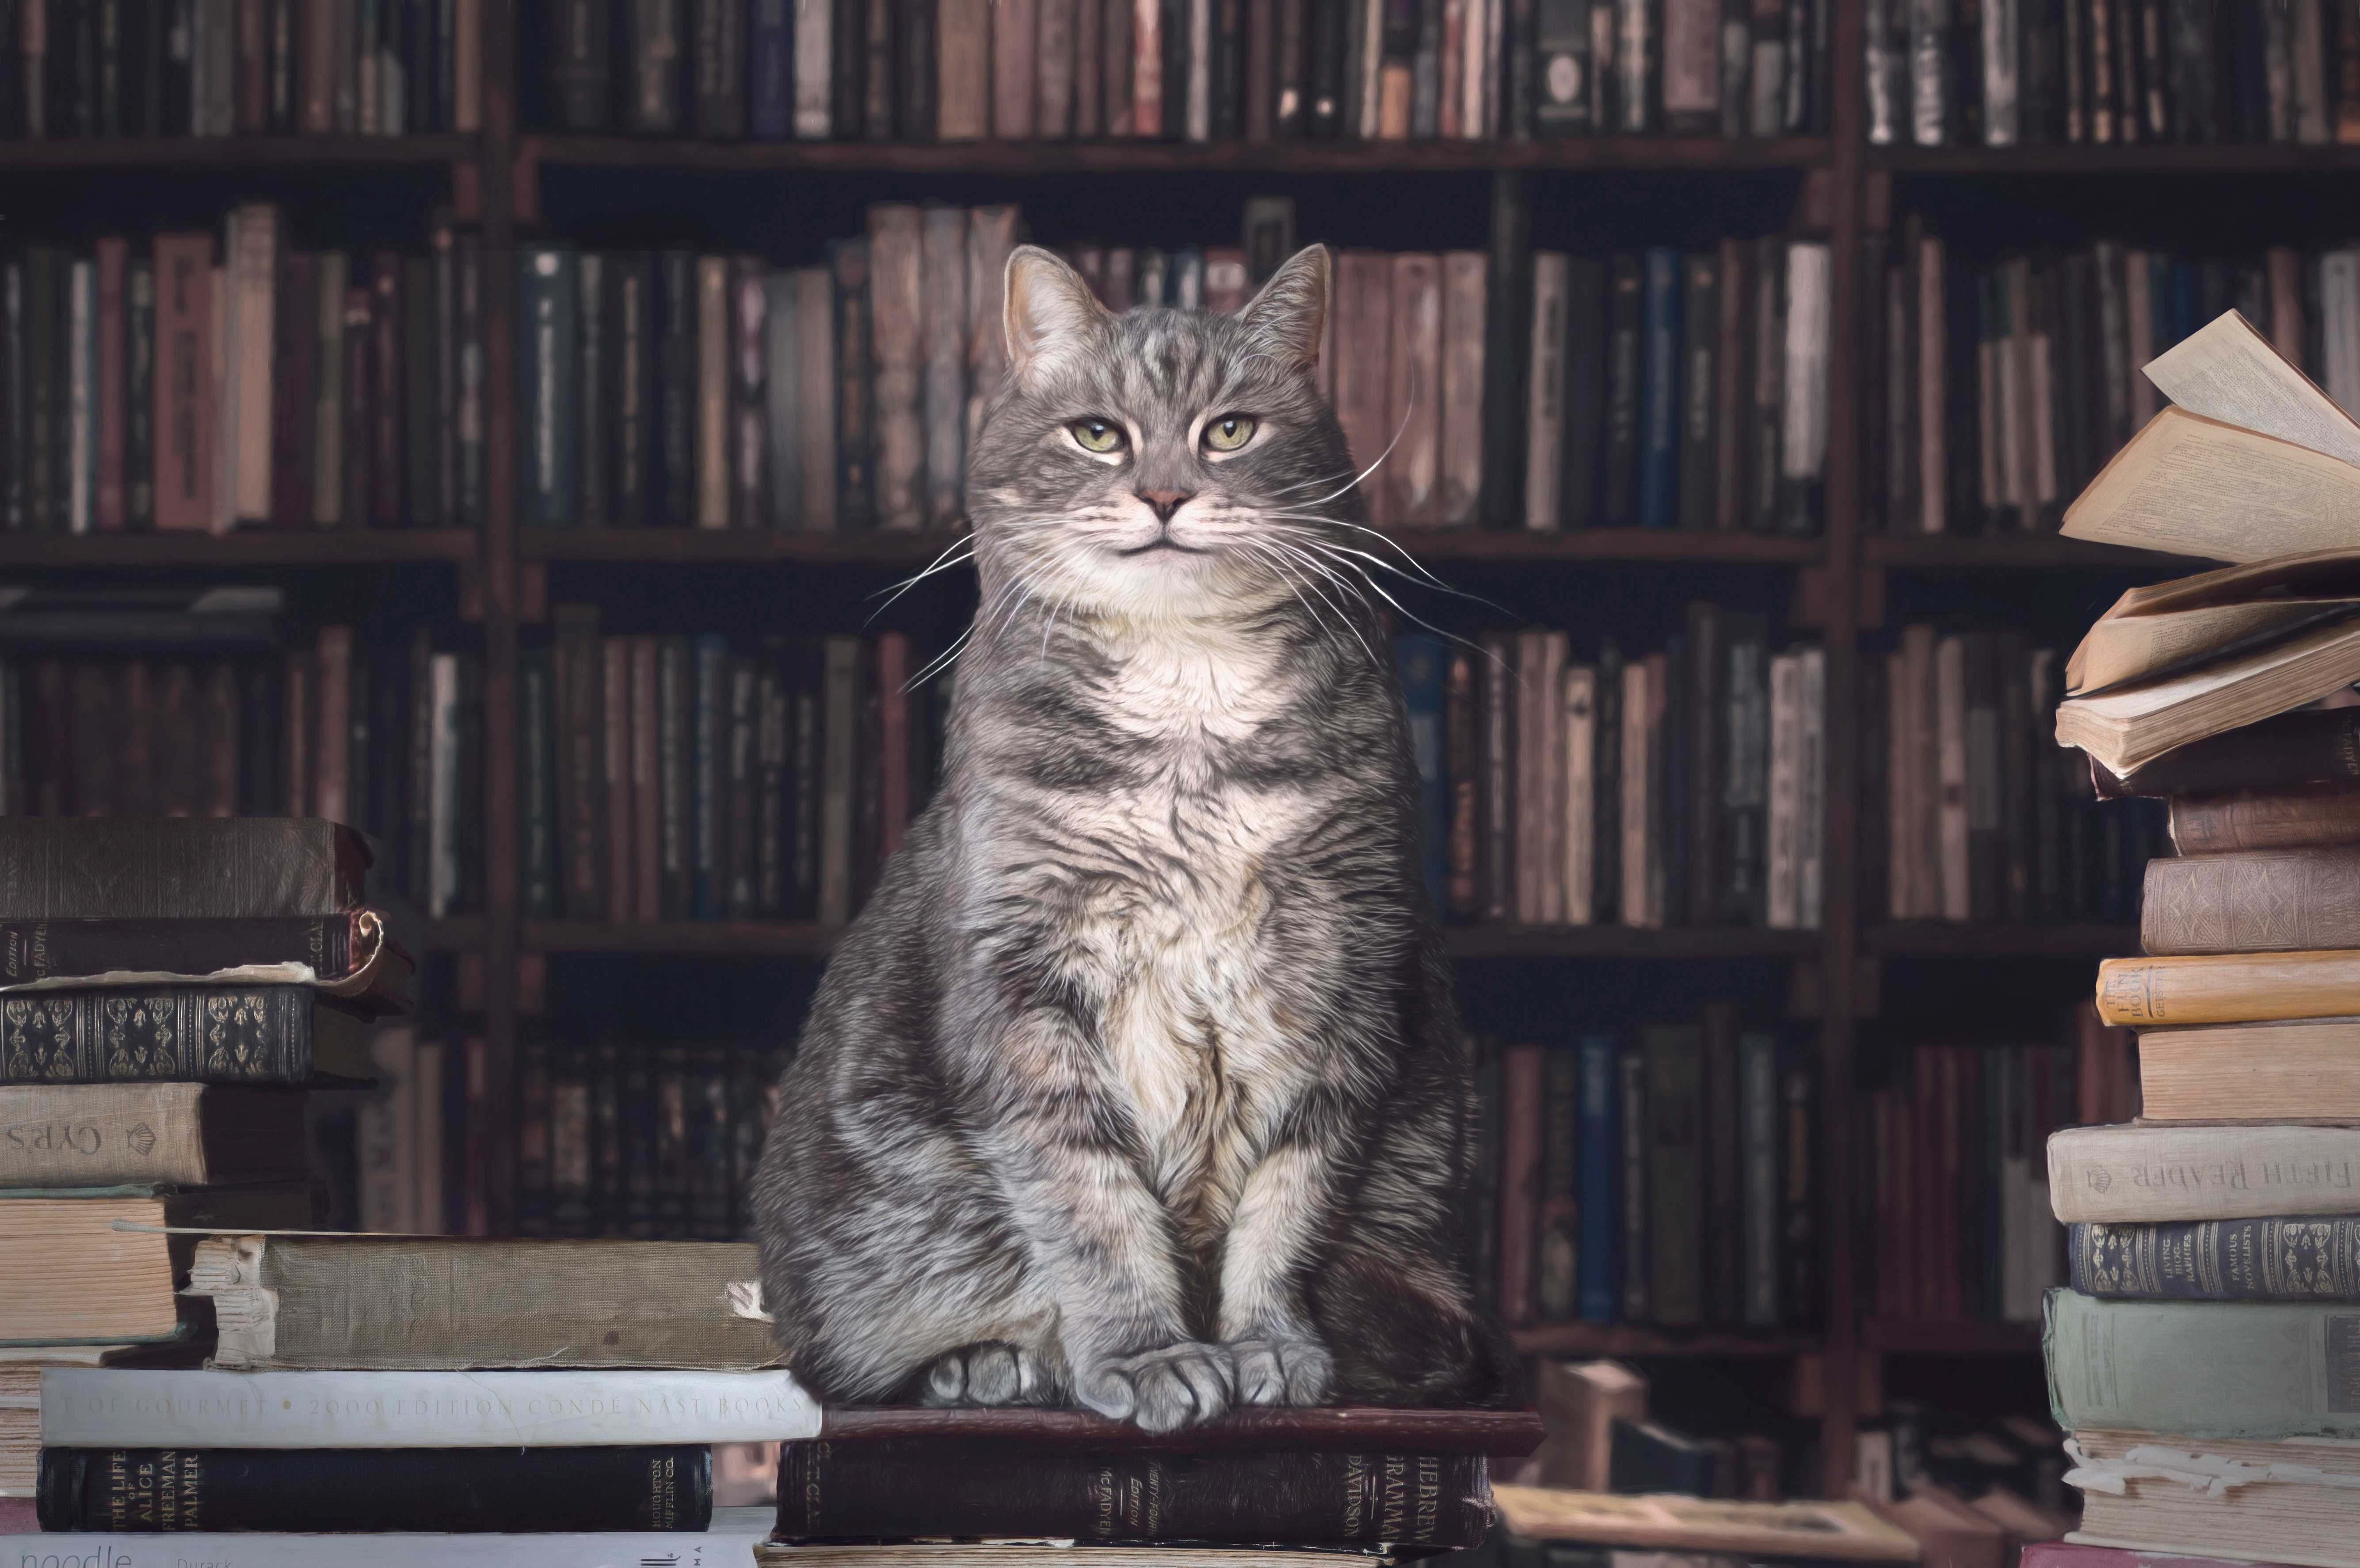 Скачать обои бесплатно Животные, Книга, Кошка, Библиотека, Кошки картинка на рабочий стол ПК